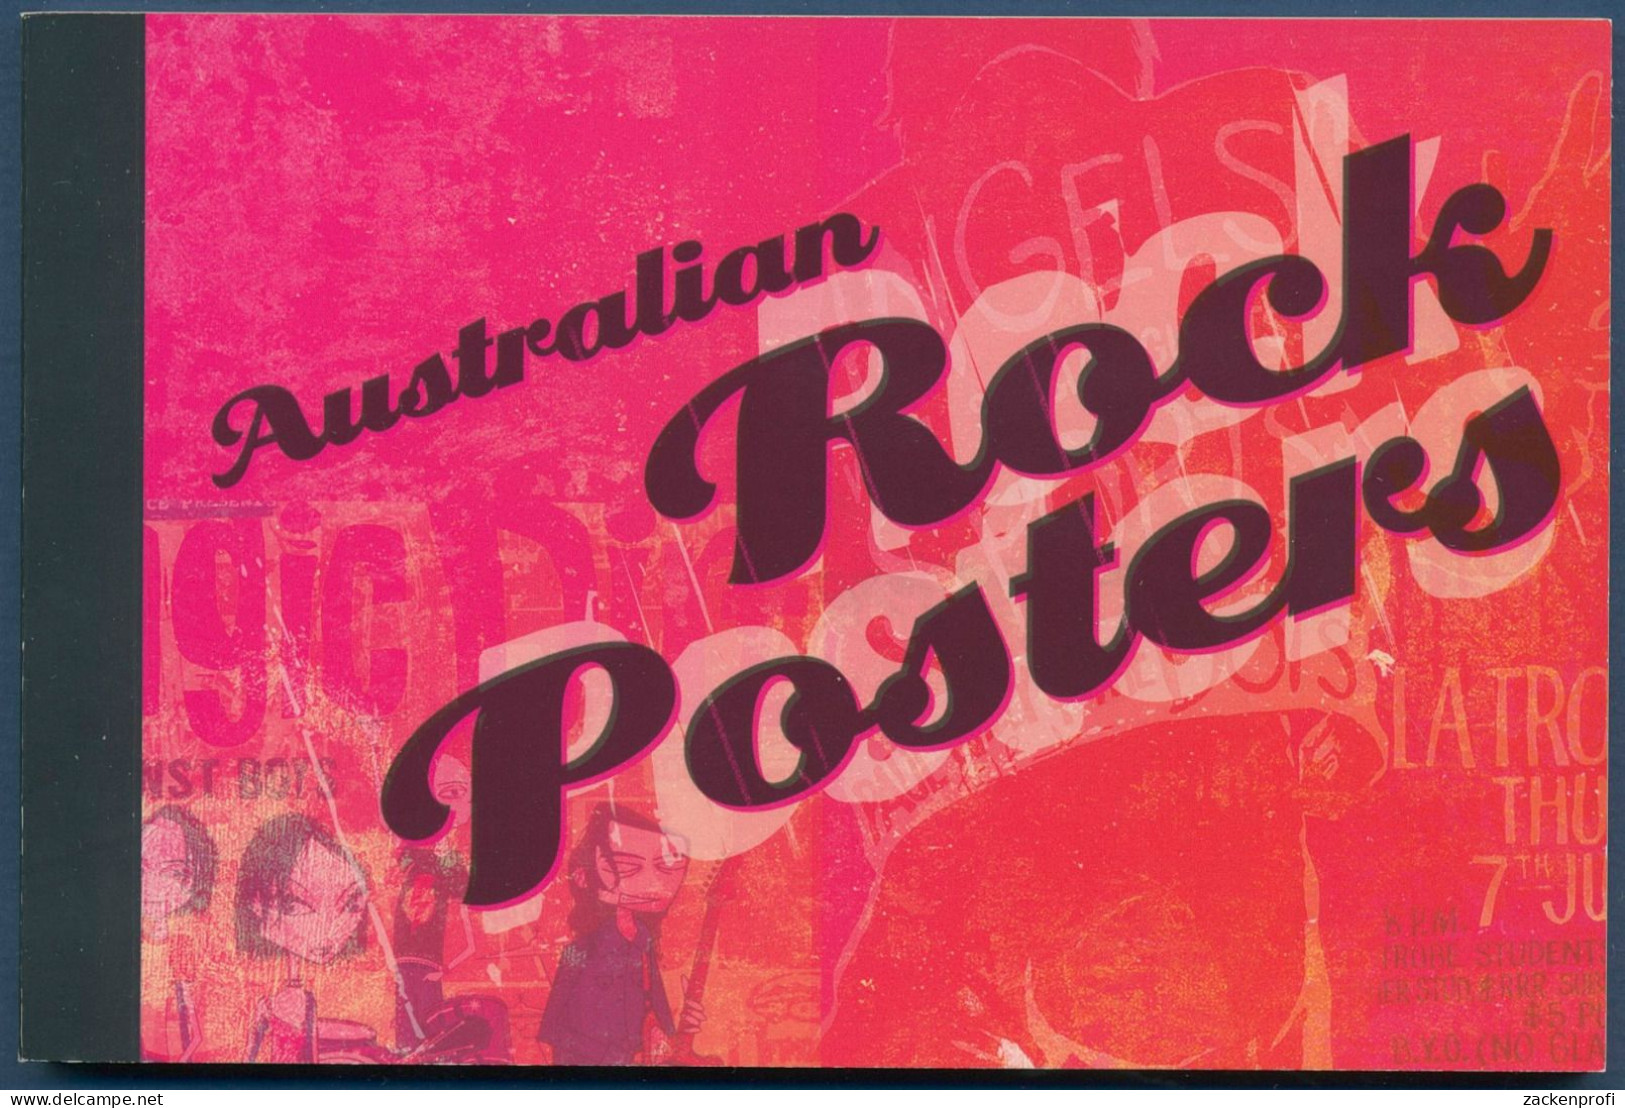 Australien 2006 Poster Rockkonzerte Rolling Stones MH 250 Postfrisch (C40390) - Markenheftchen